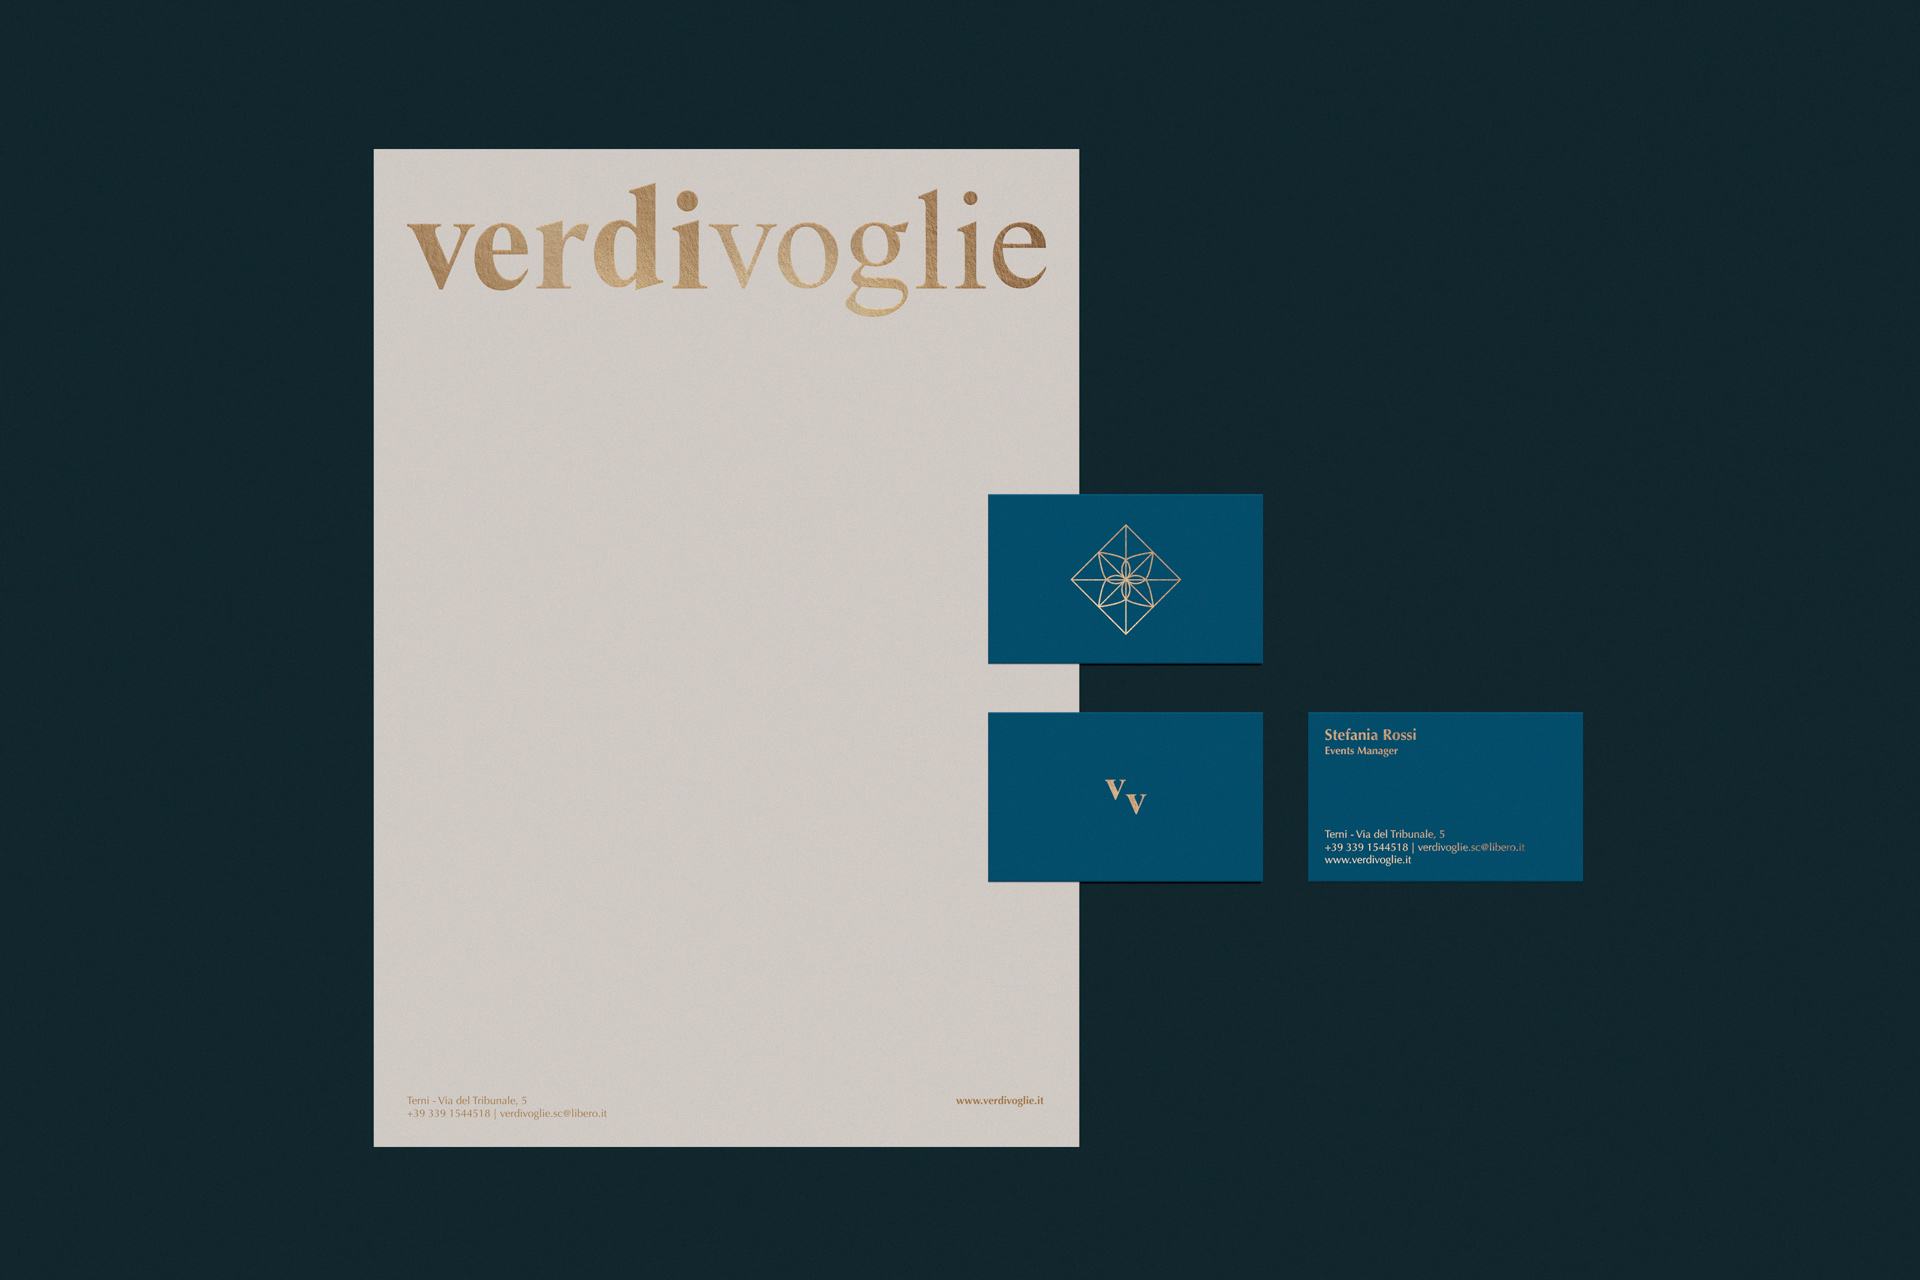 VV brand identity stationery